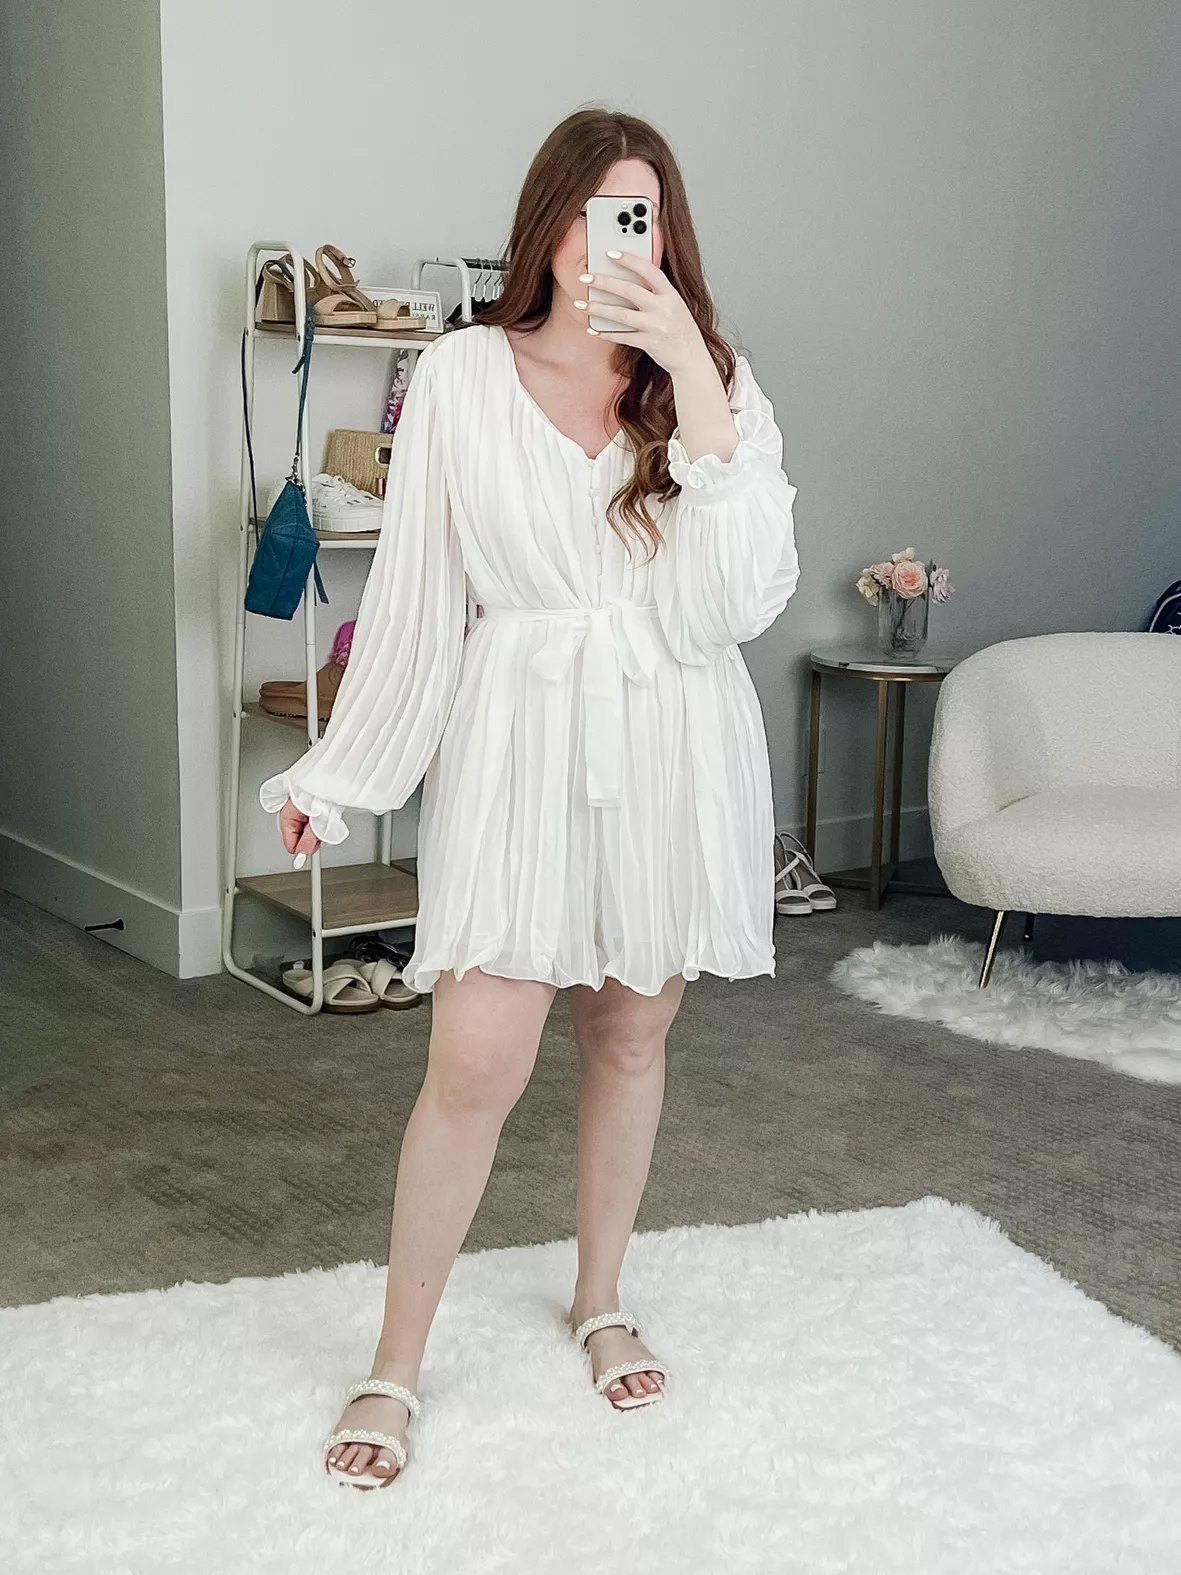 Shy Velvet Women's Summer Dress … curated on LTK